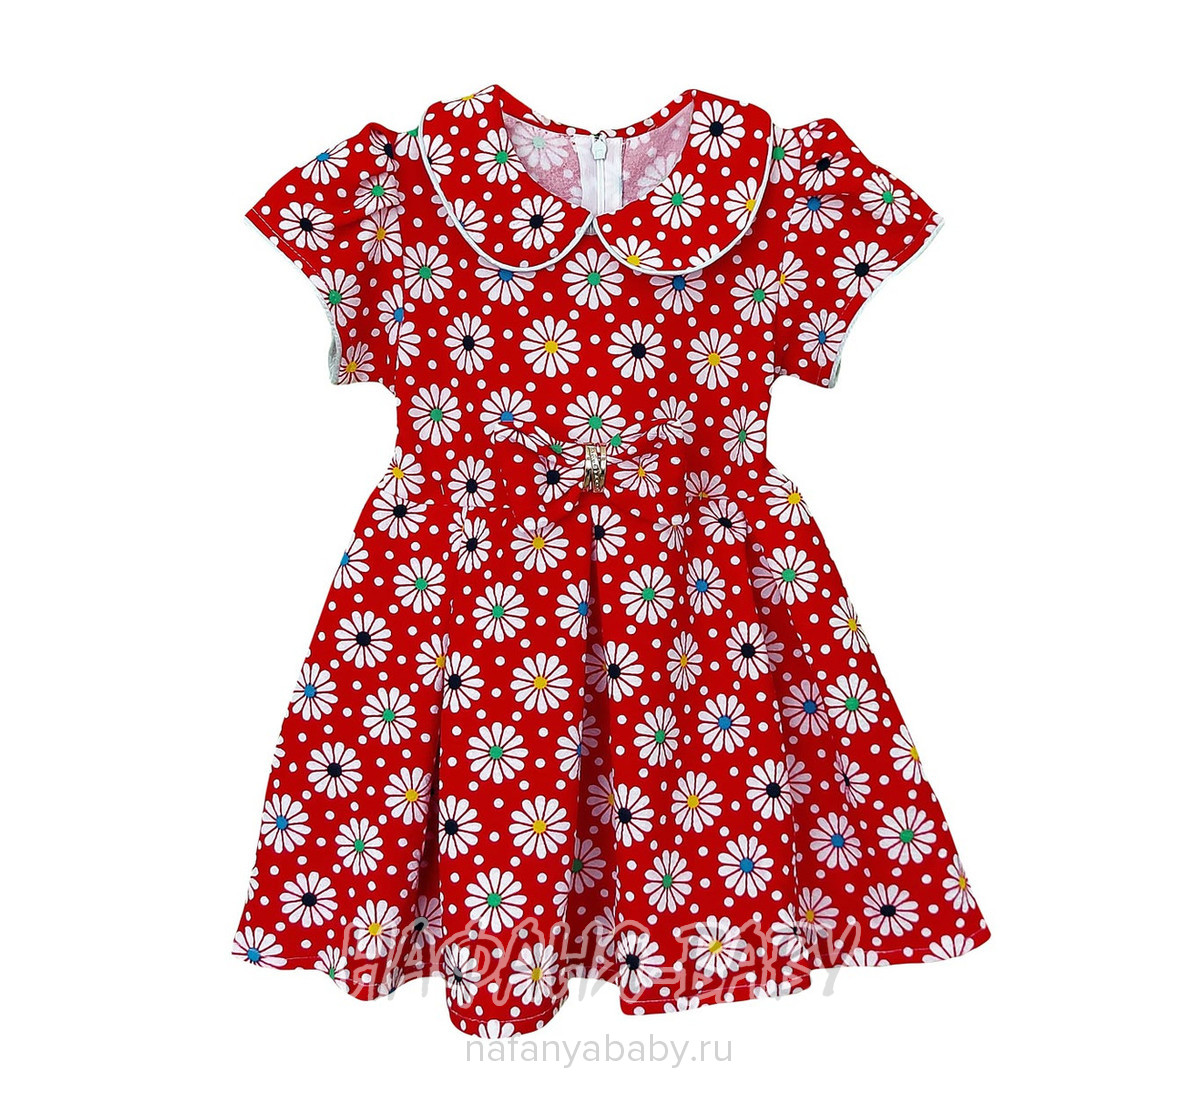 Детское платье KGMART арт: 2199, 1-4 года, 5-9 лет, оптом 